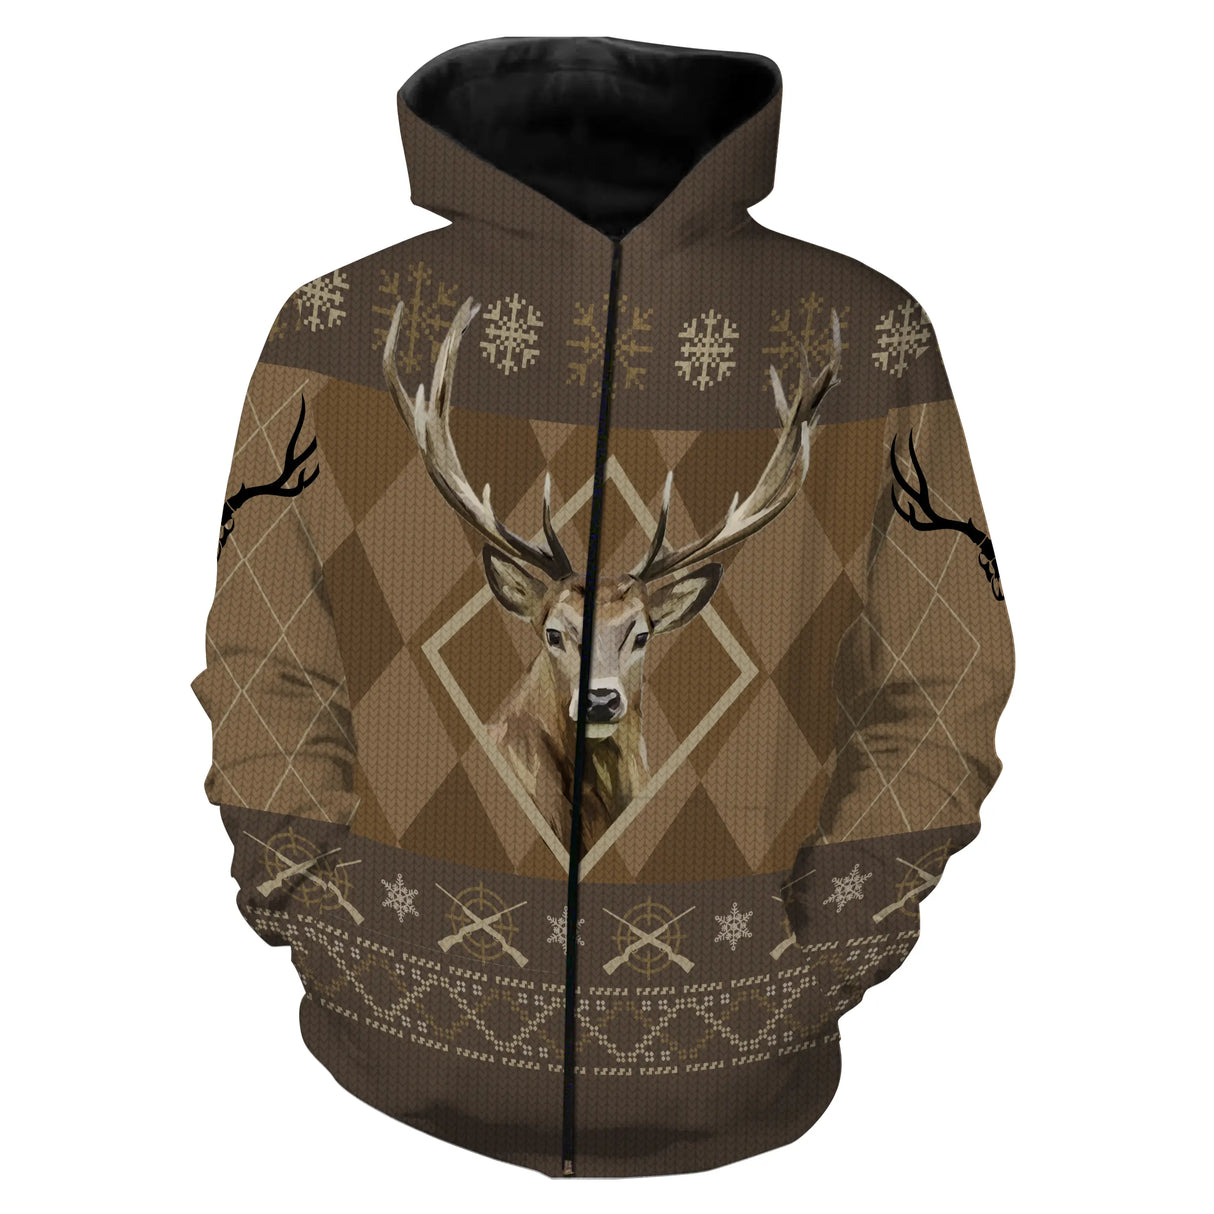 Suéter navideño, caza de ciervos, regalo de Navidad para cazador - CT07112236